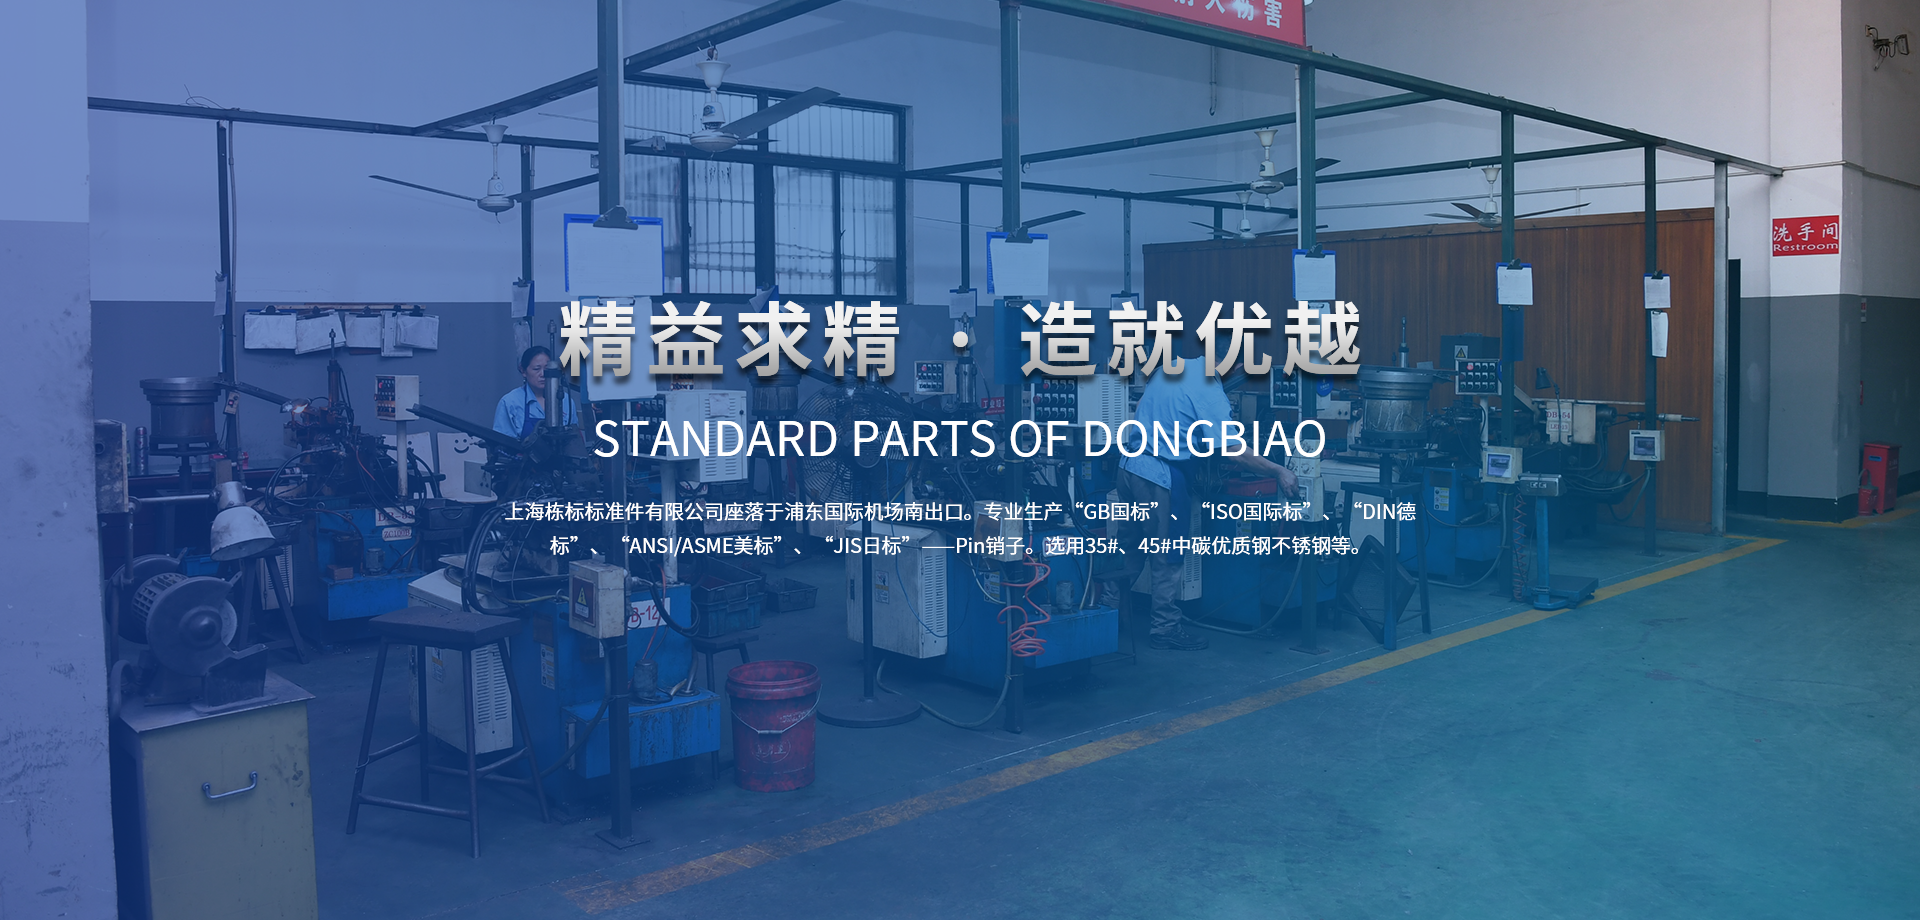 上海棟標標準件有限公司